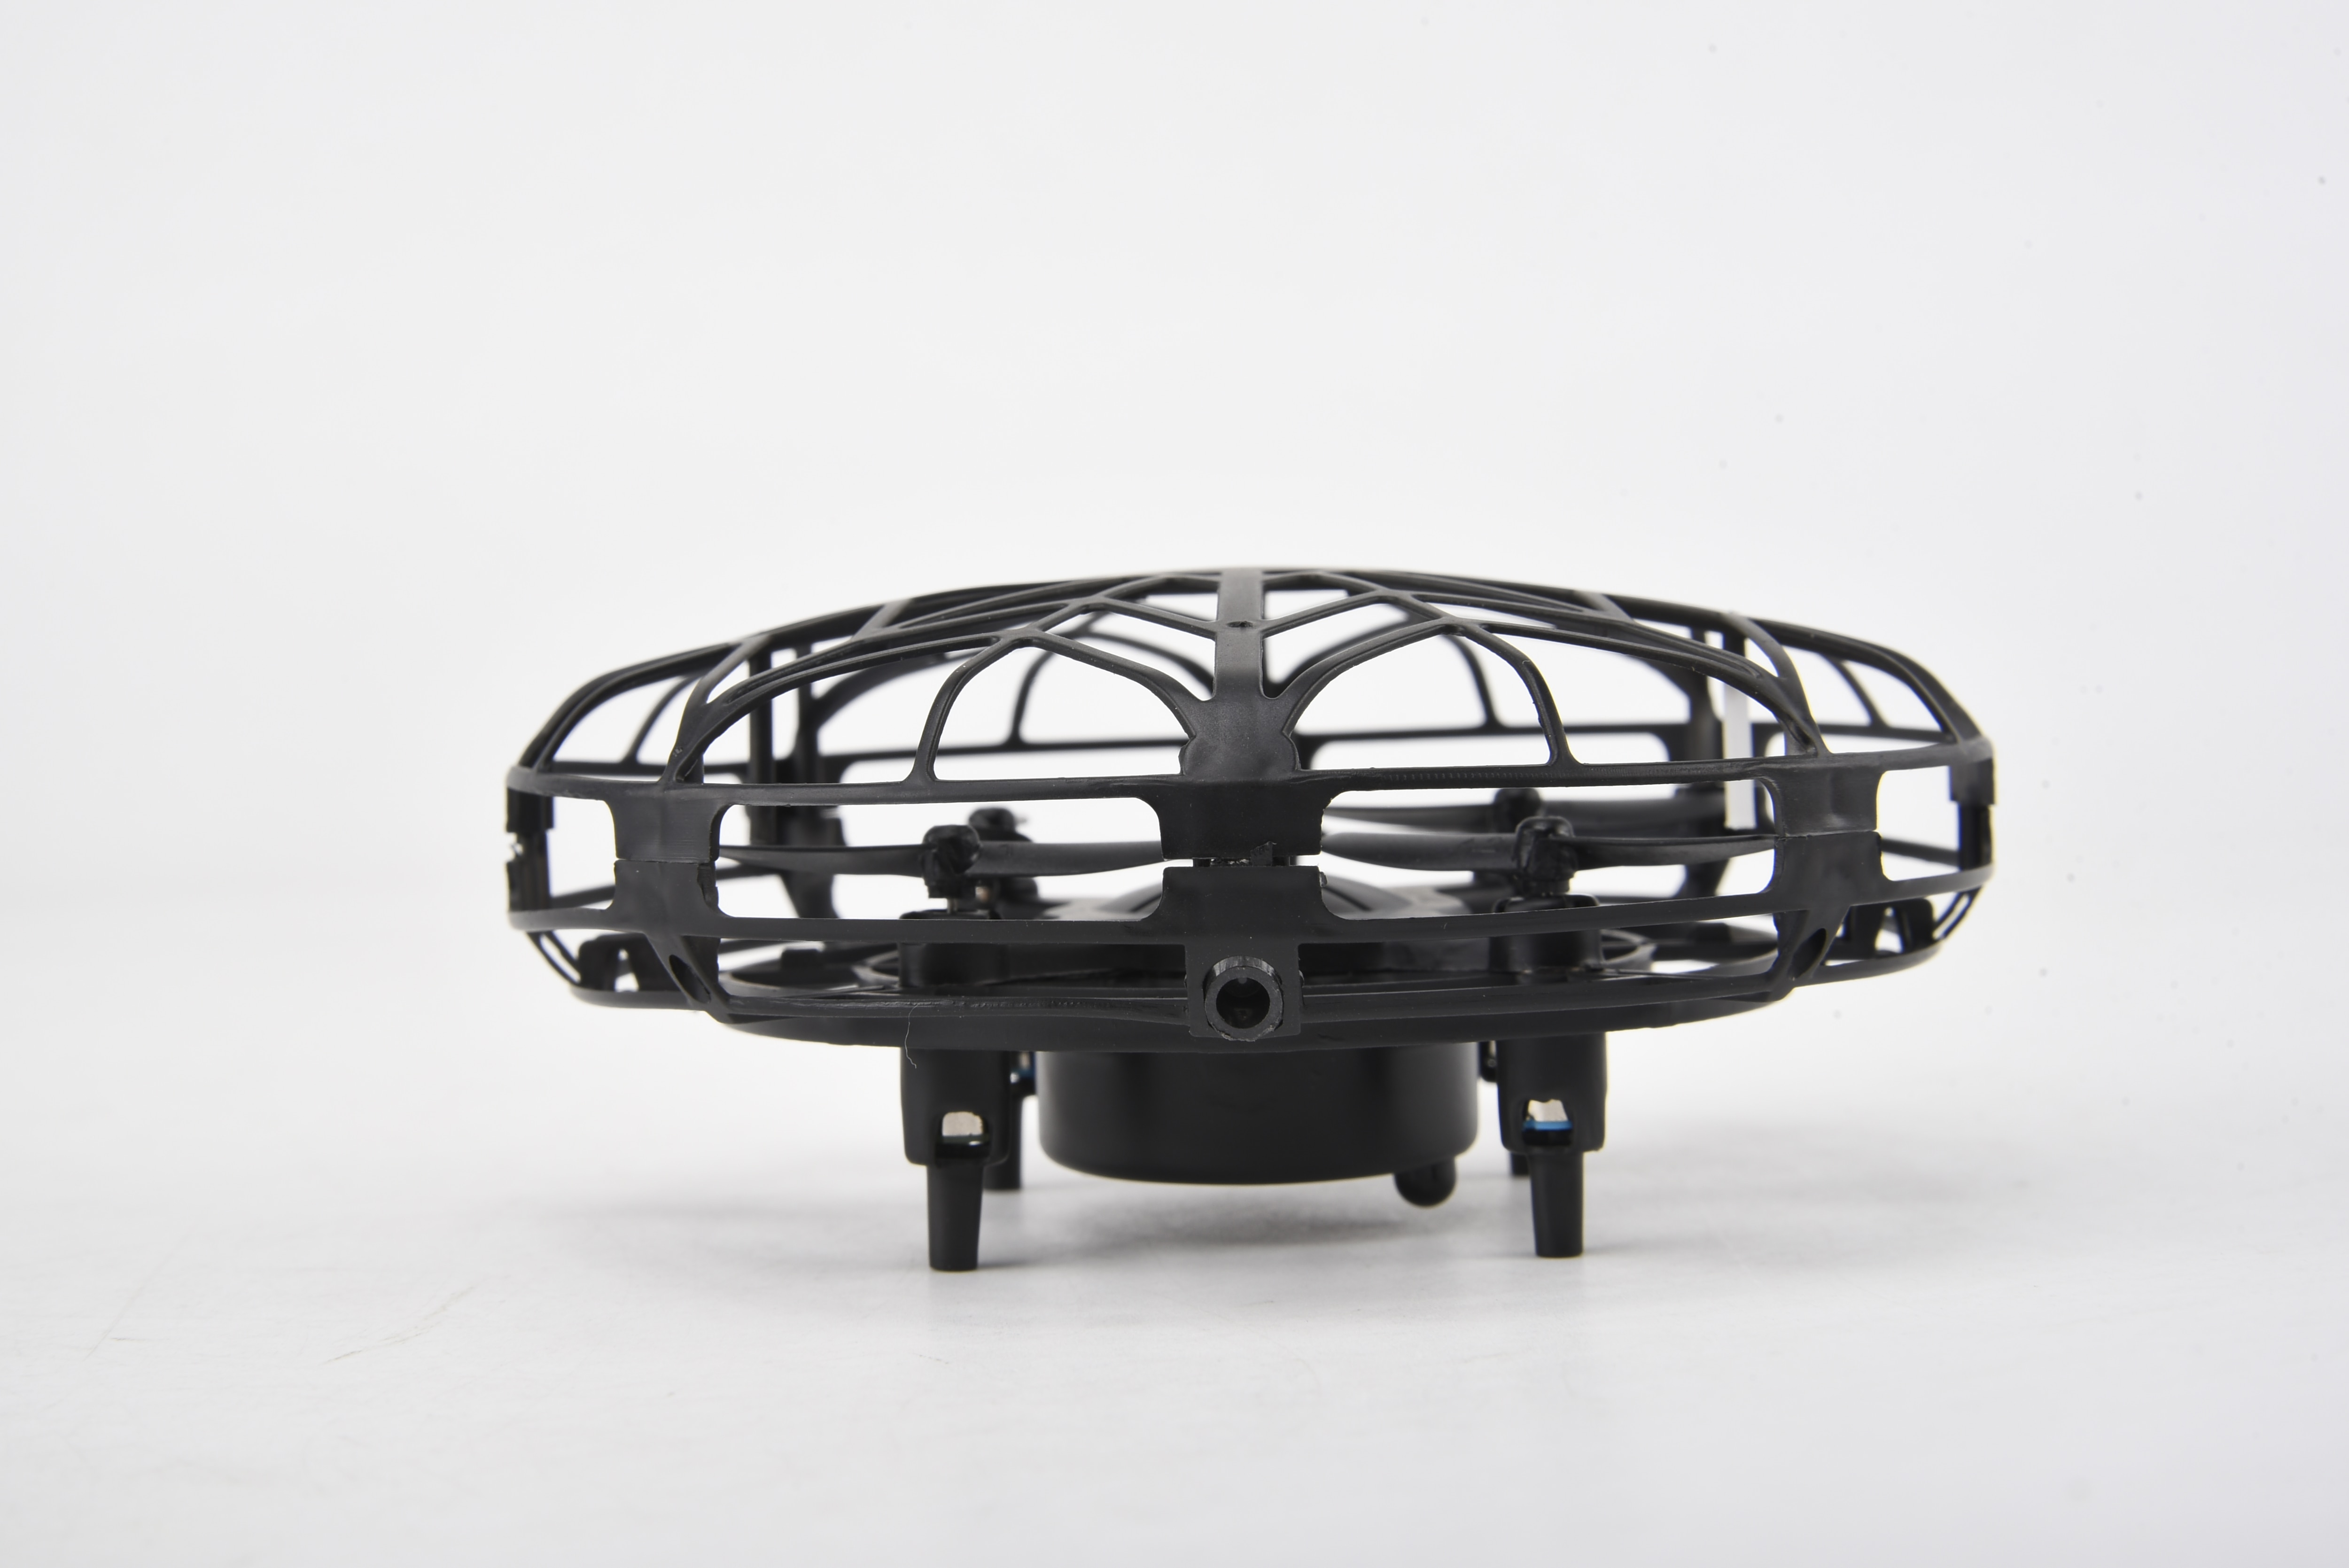 Smart Drone UFO musta